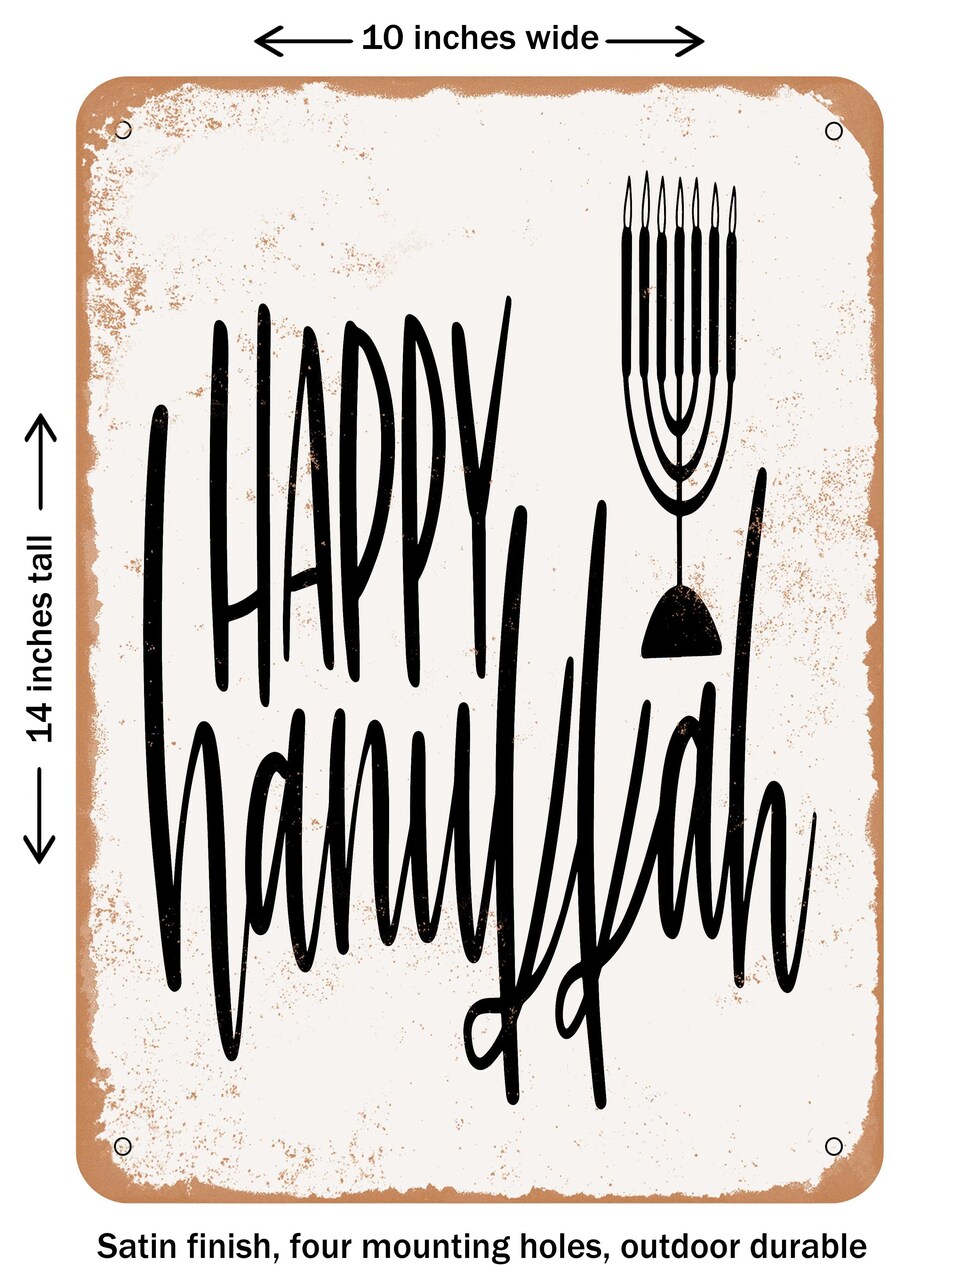 DECORATIVE METAL SIGN - Happy Hanukkah  - Vintage Rusty Look